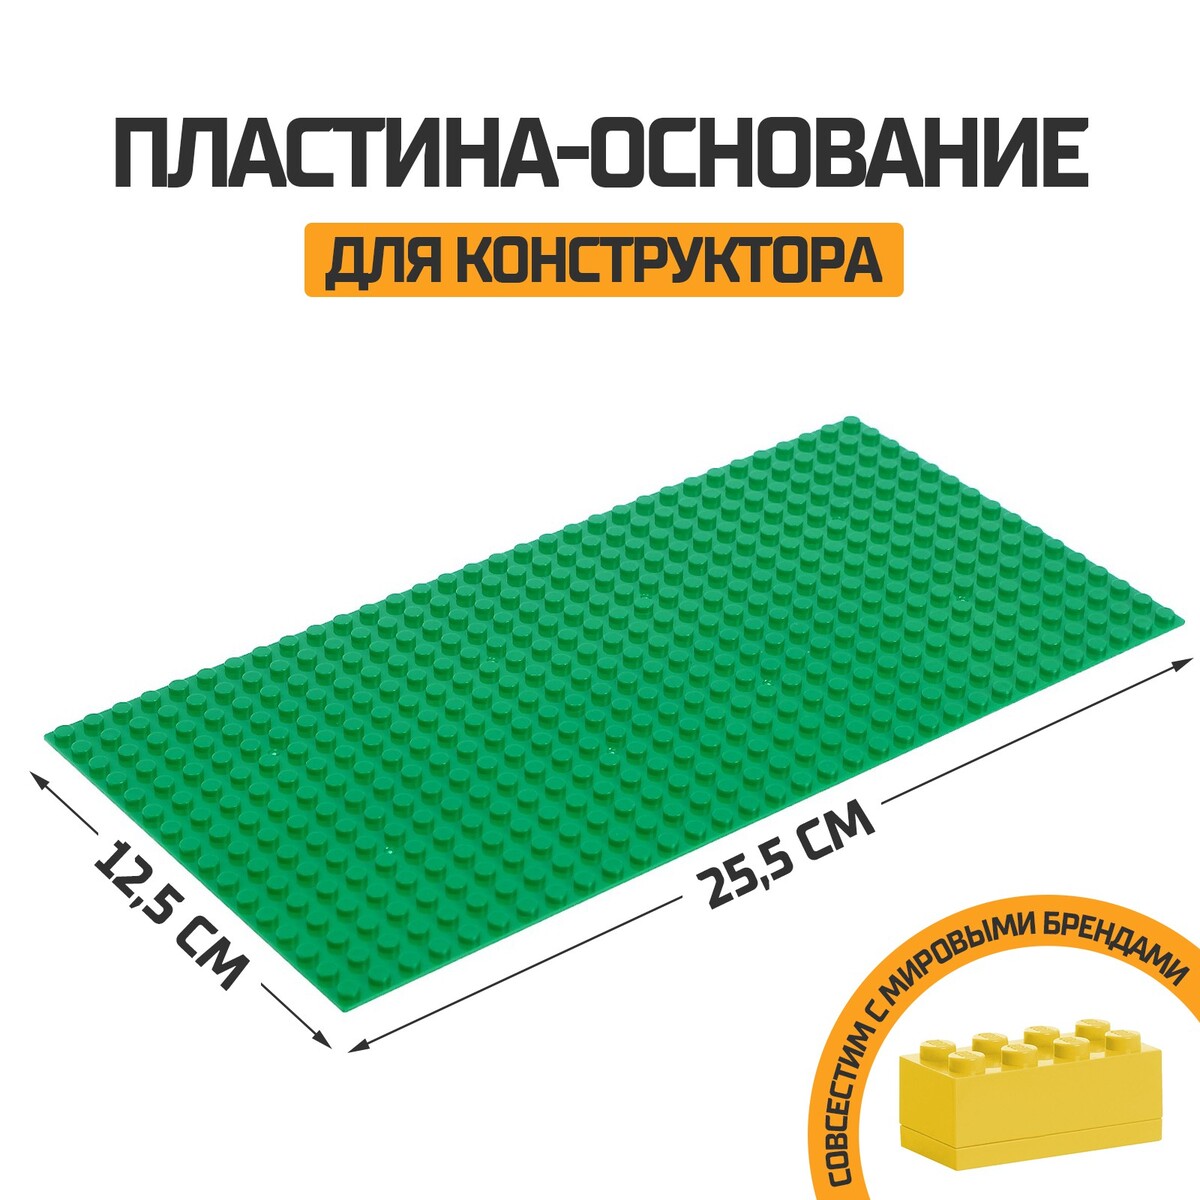 Пластина-основание для конструктора, 25,5 х 12,5 см, цвет зеленый пластина основание для конструктора 25 5 × 12 5 см серый